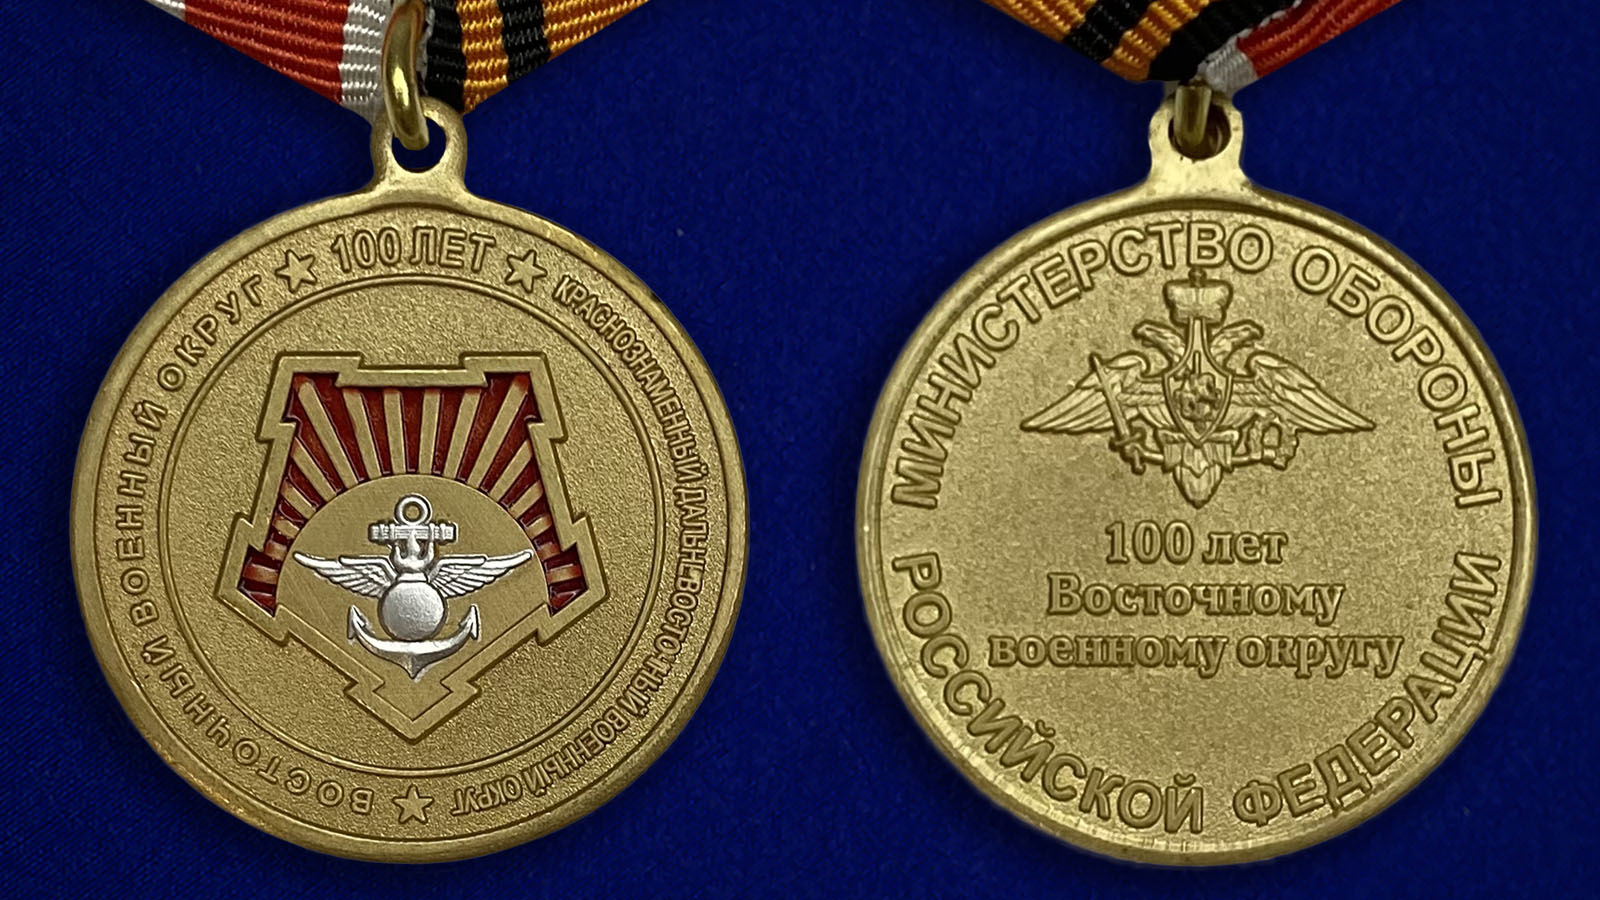 Описание медали "100 лет Восточному военному округу" - аверс и реверс